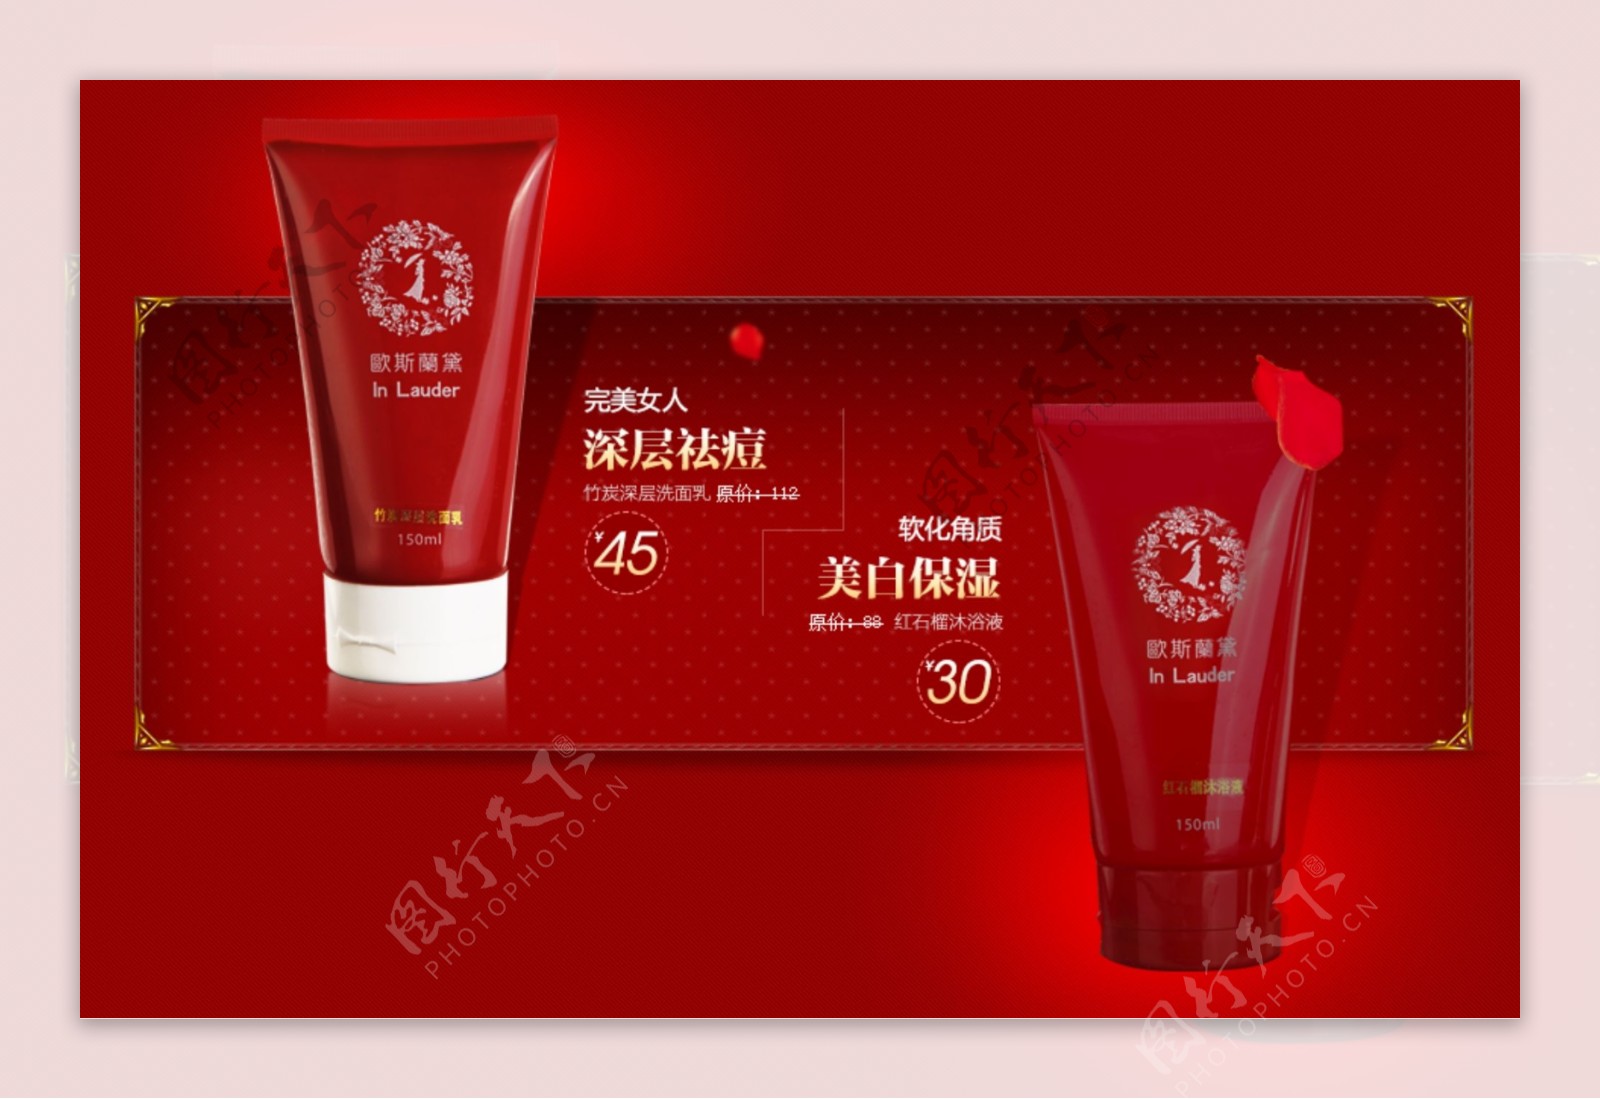 红色背景海报设计化妆品广告模版